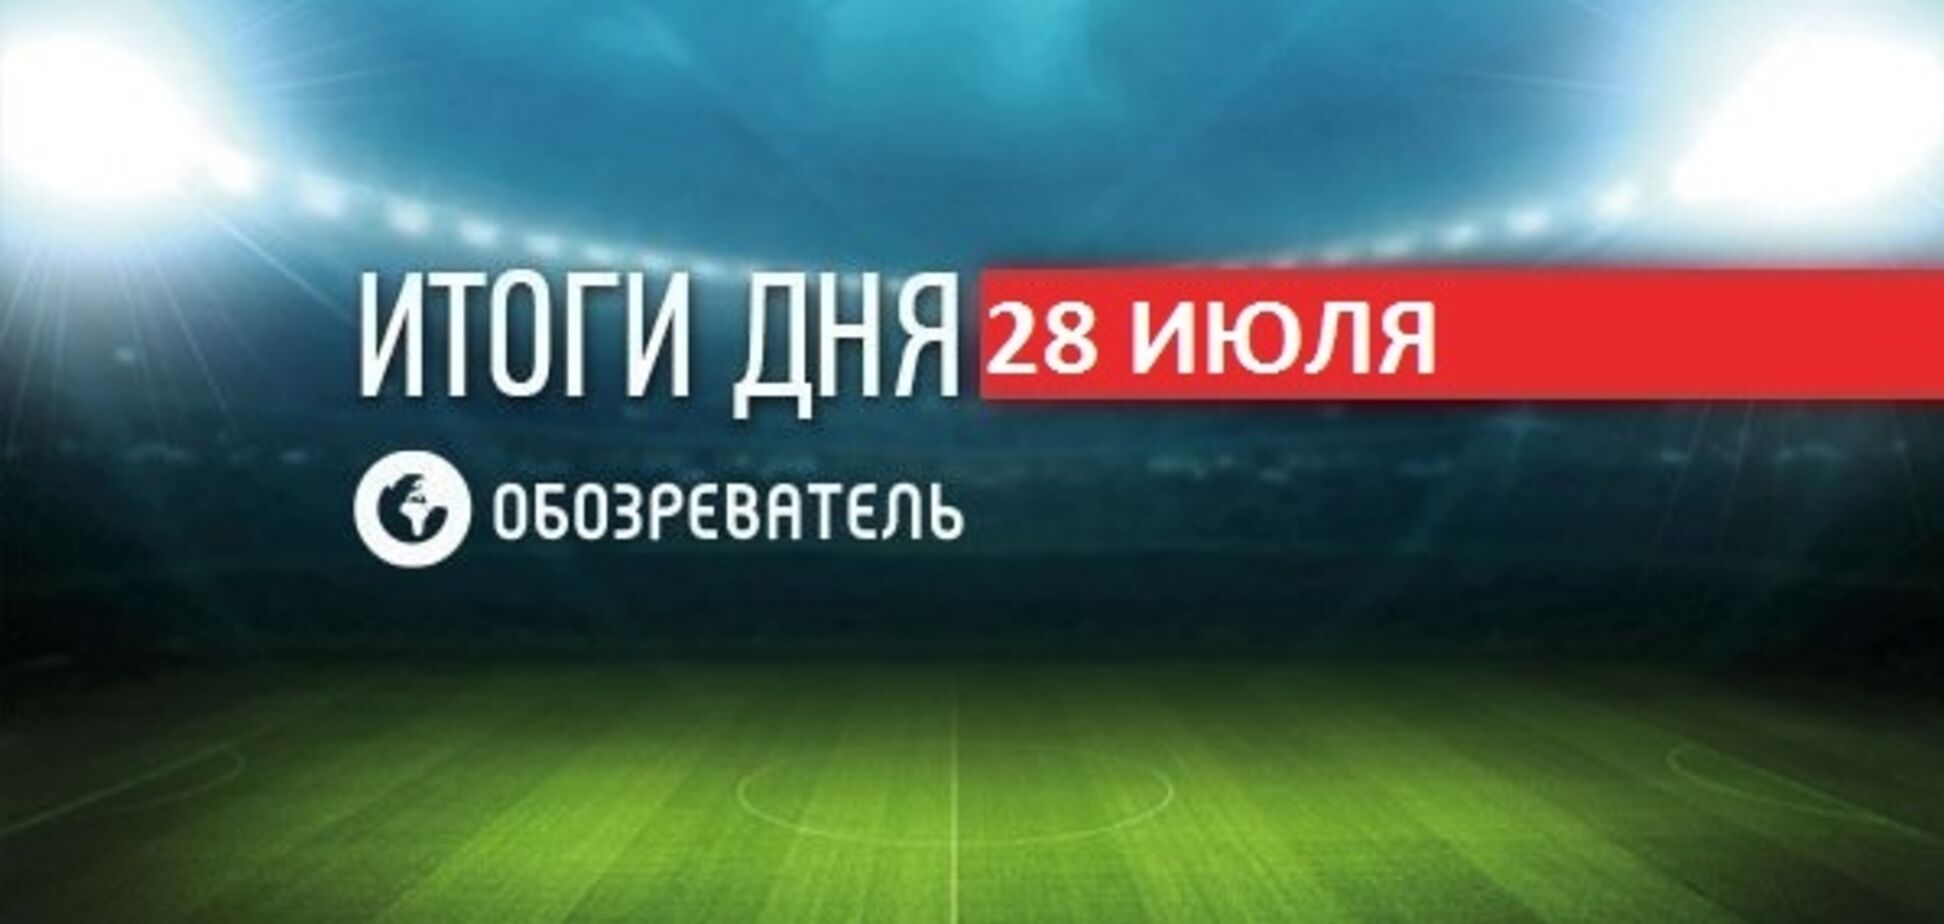 Зеленский засветился на Суперкубке Украины: спортивные итоги 28 июля